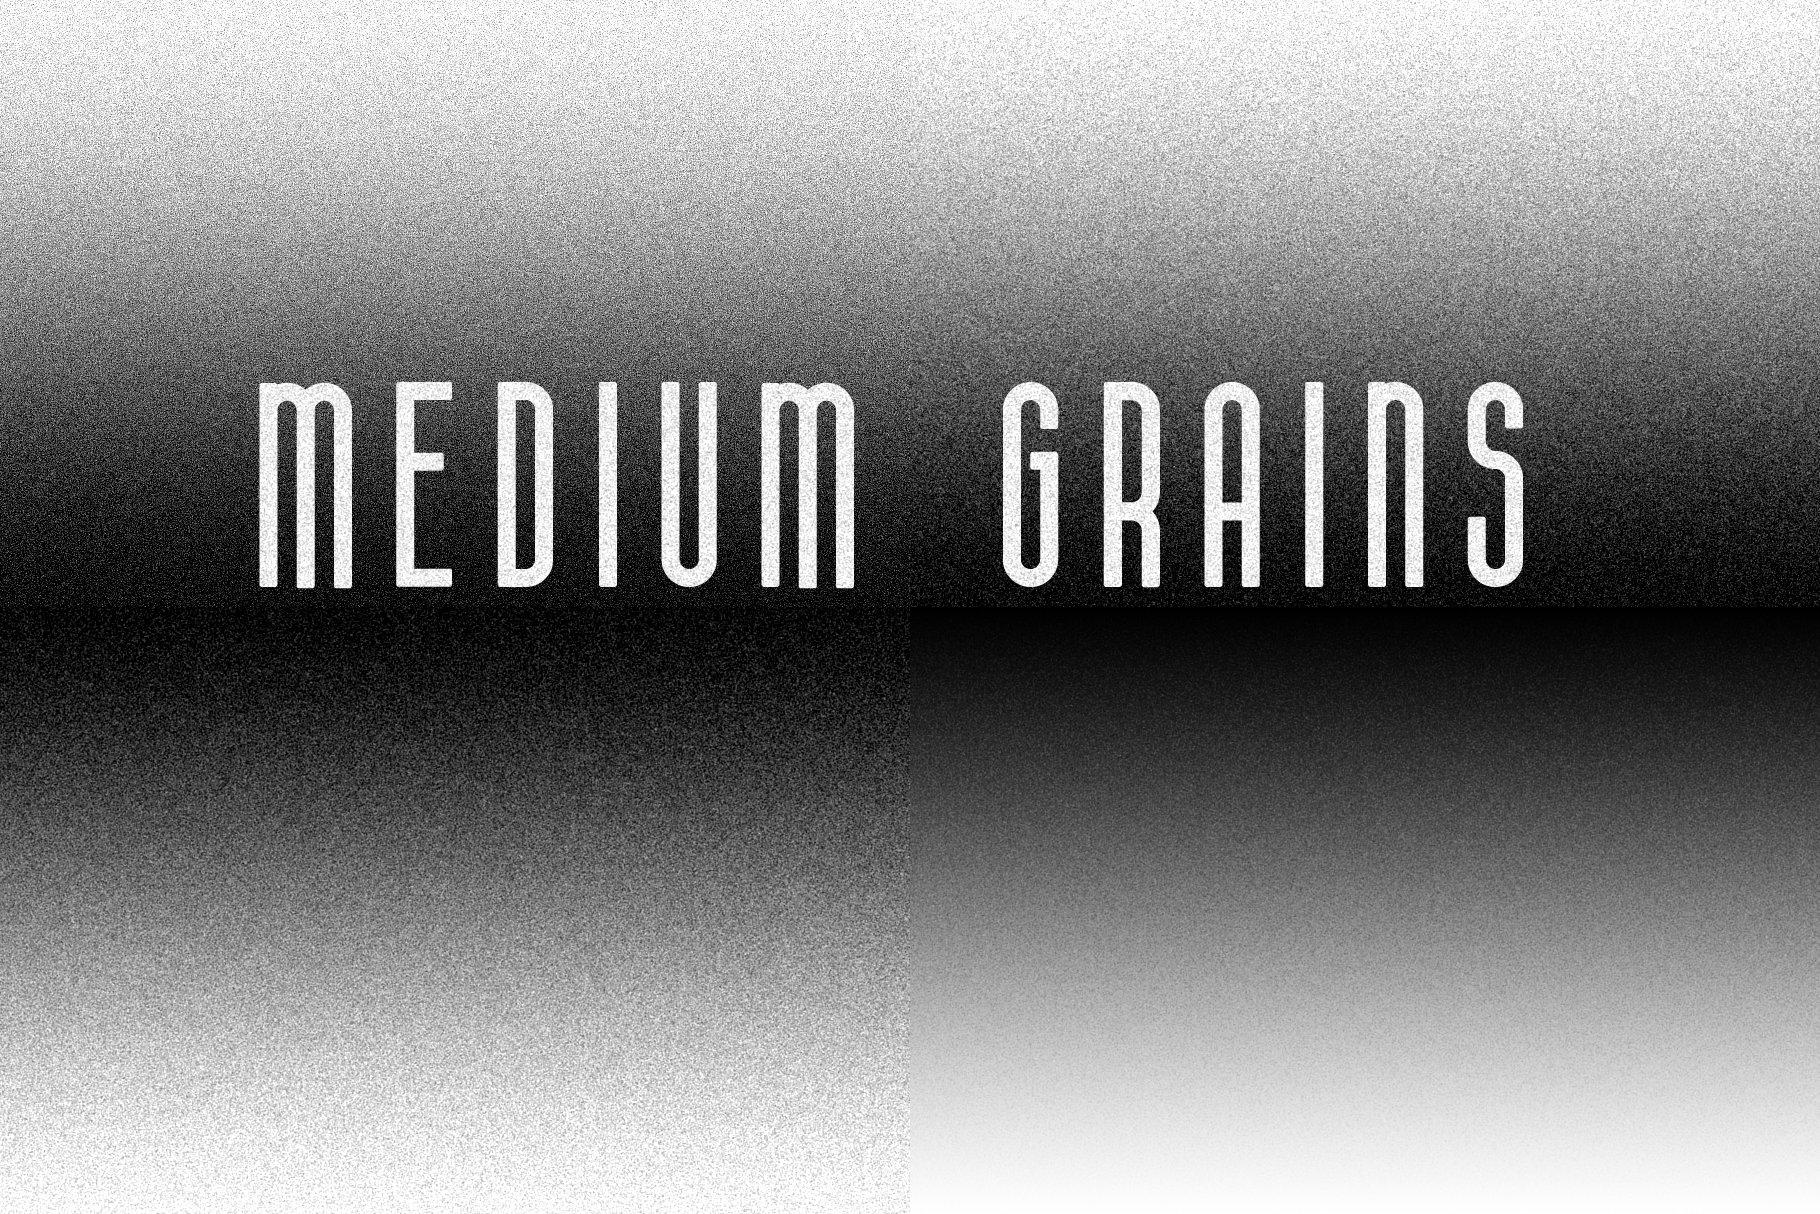 grainmaker mediumgrains 964